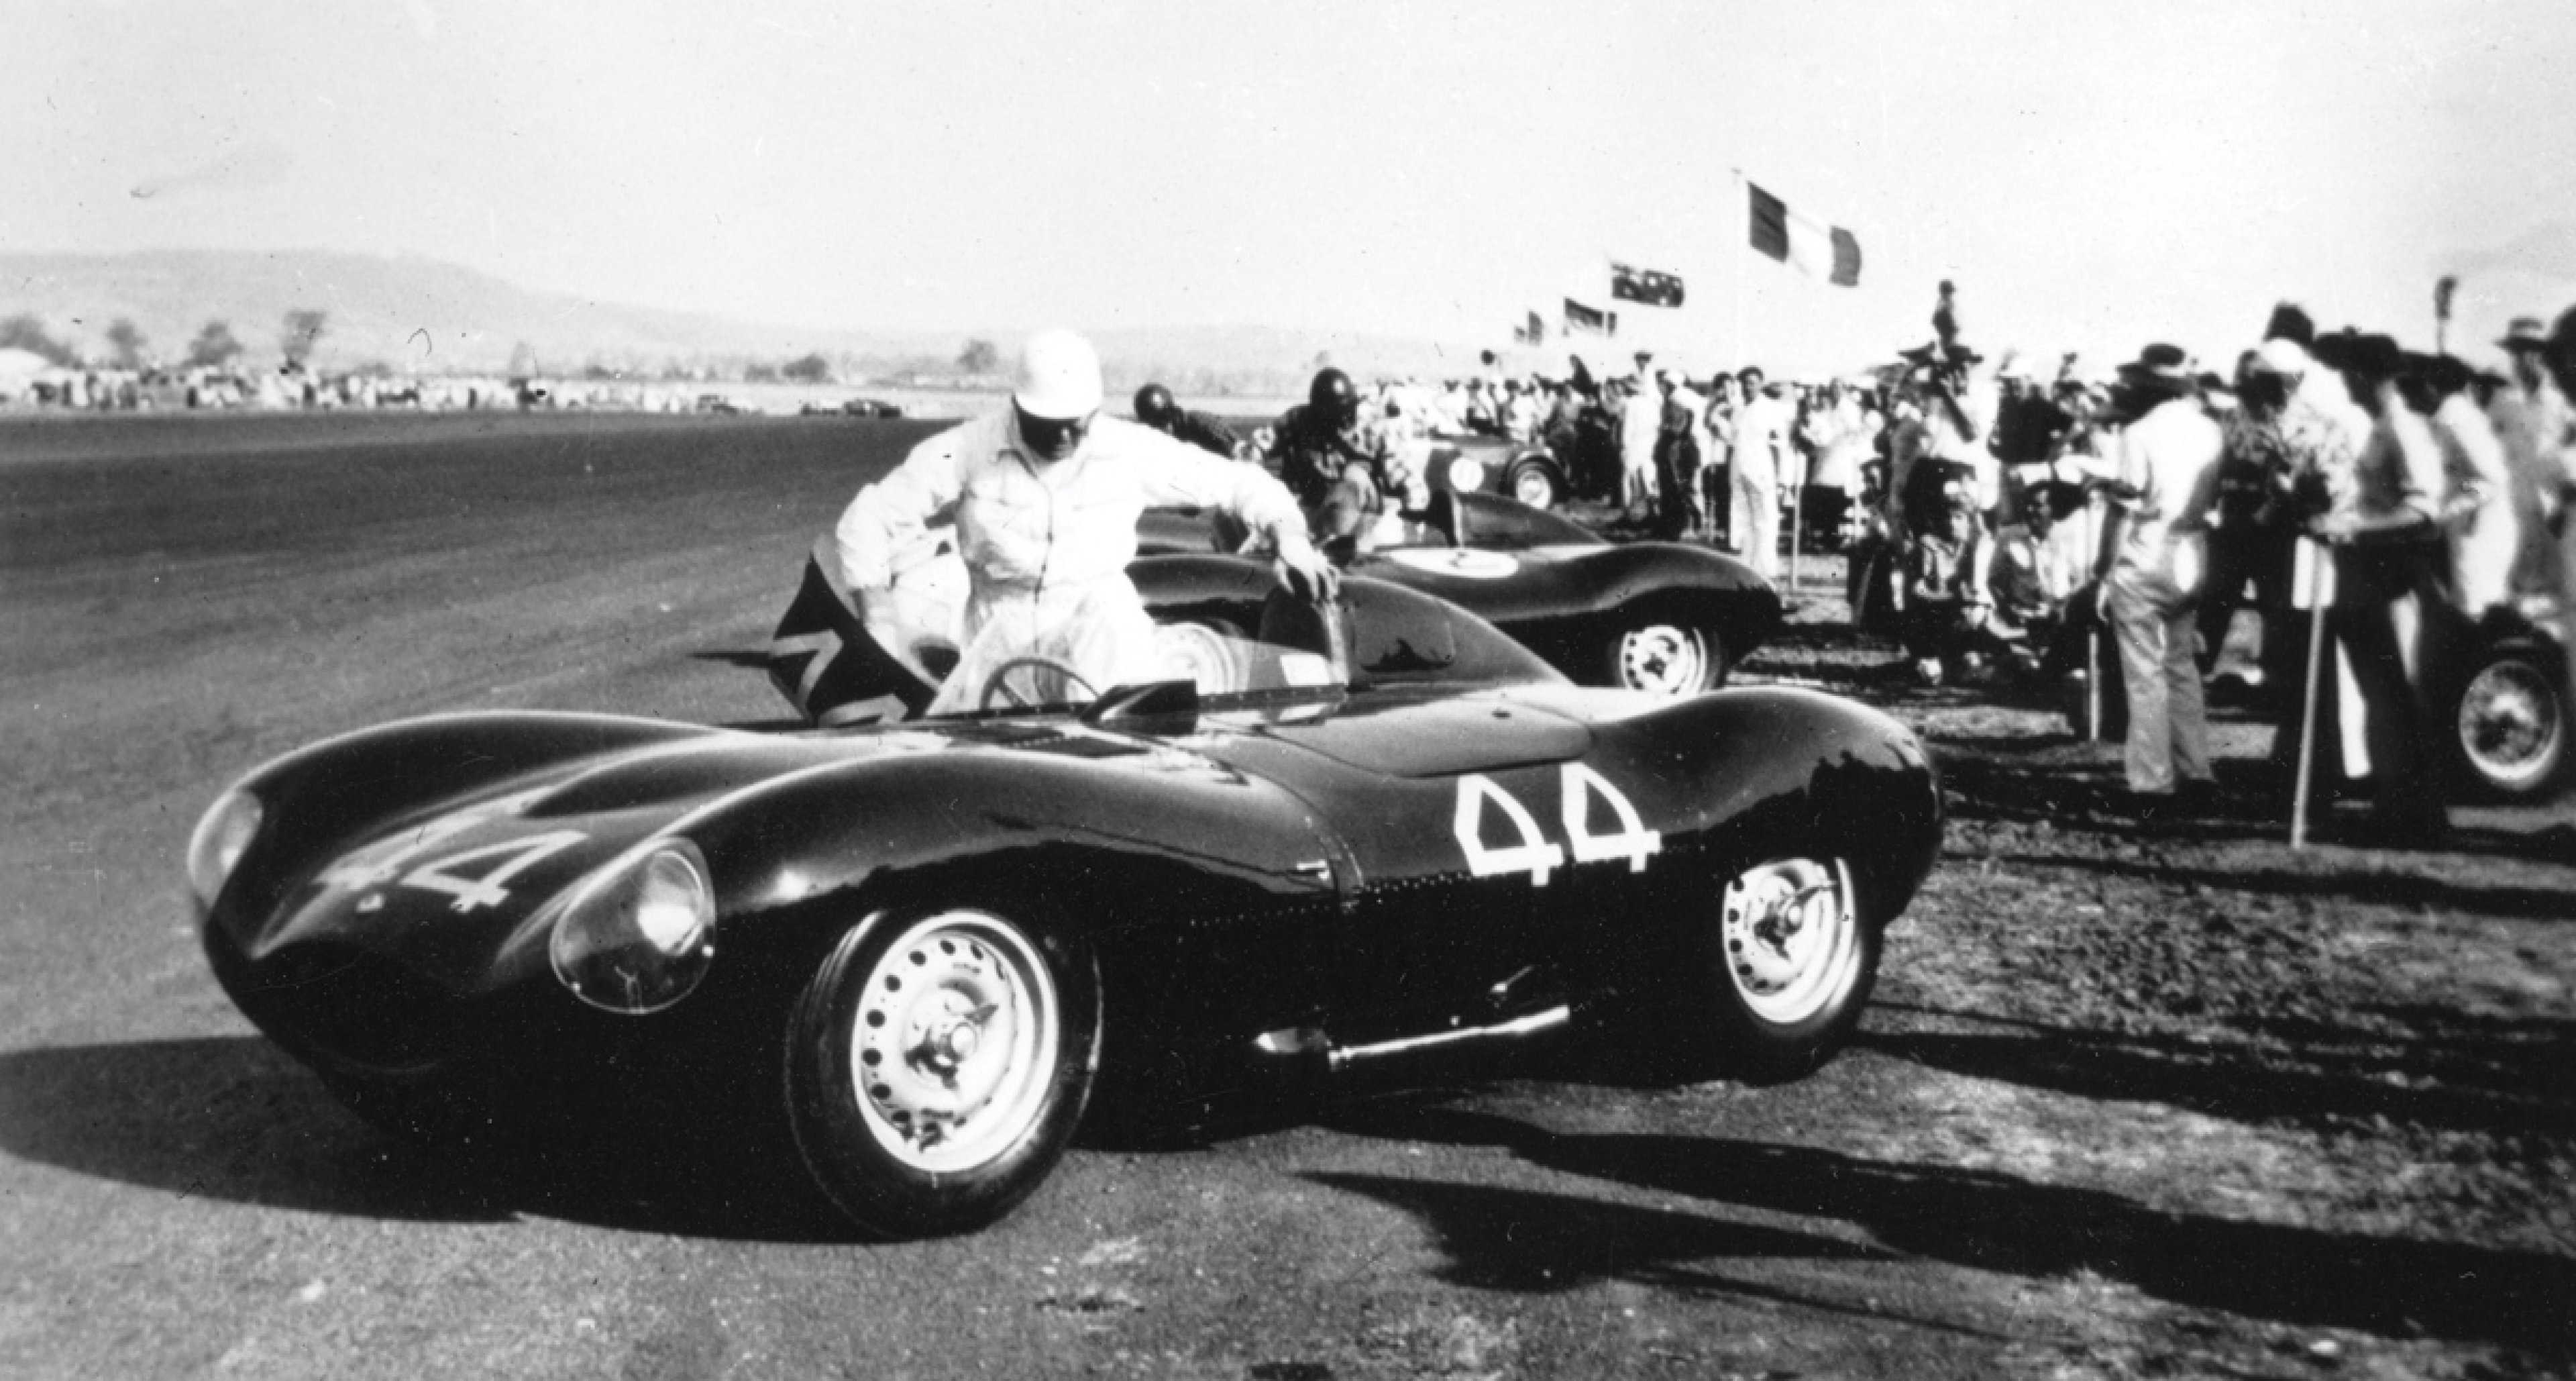 Lot 30: 1955 Jaguar D-Type € 4.100.000 - 4.700.000